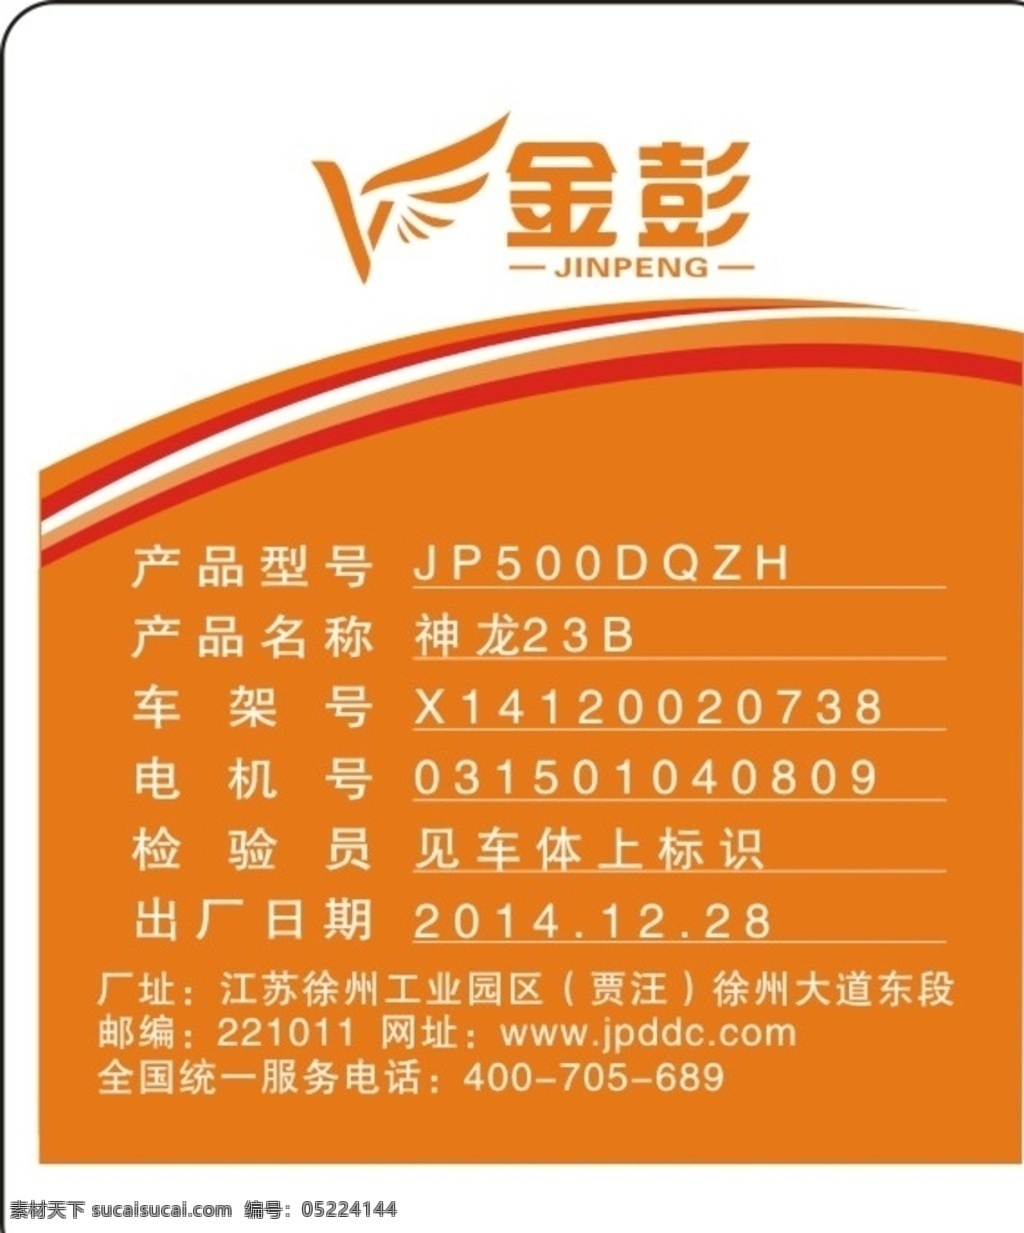 金 彭电 动车 数据 标识 牌 金彭 电动车 标识牌 型号 产品 日期 名片 名片卡片